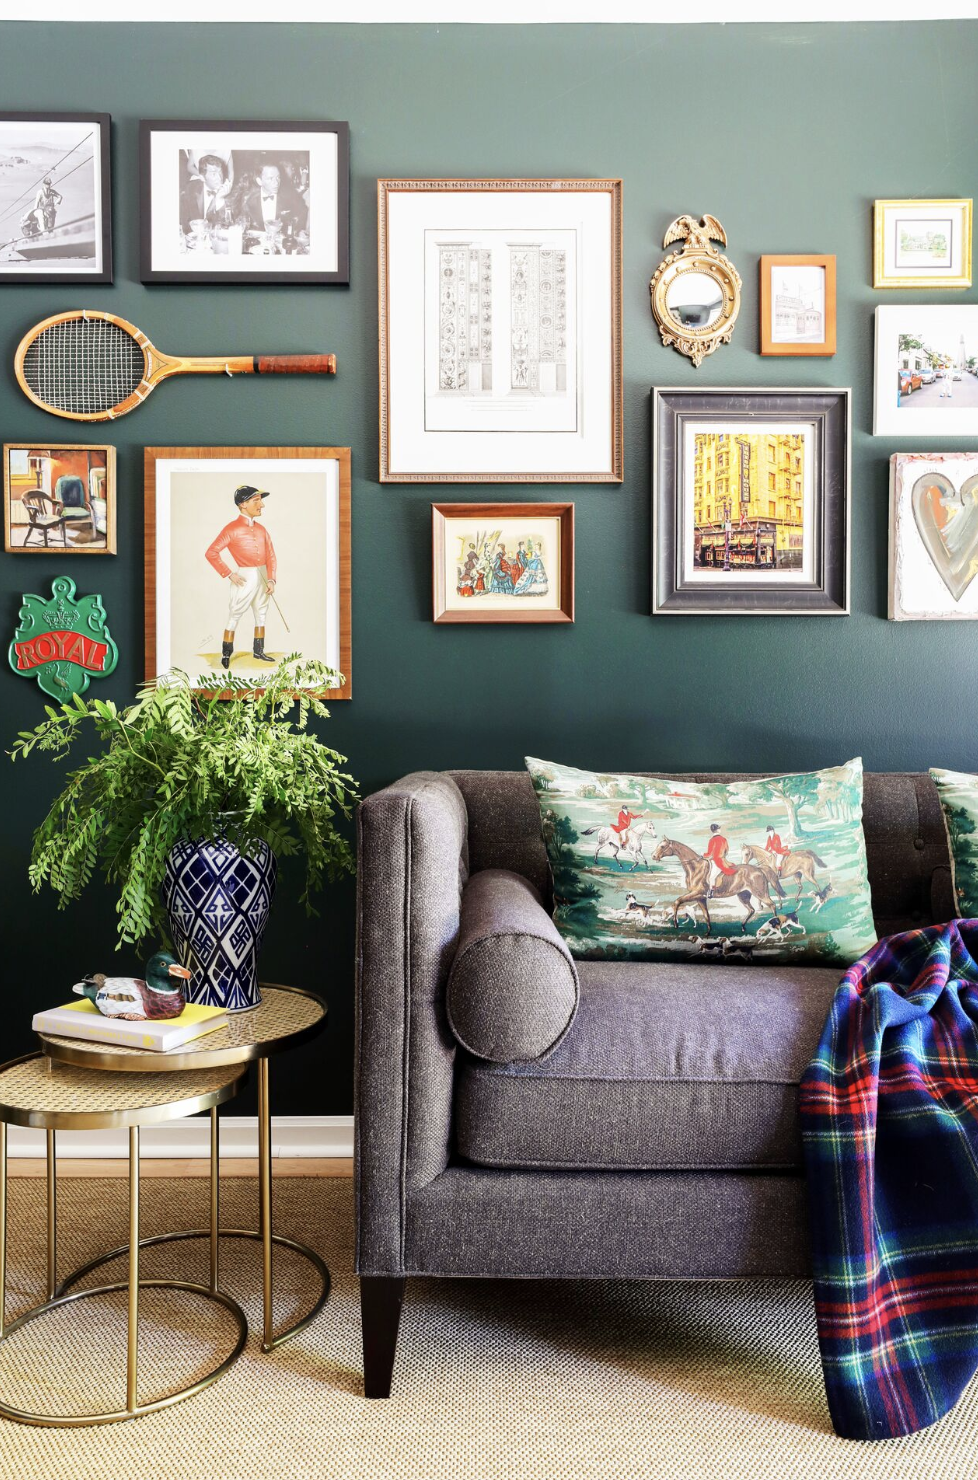 Home Interior Design Ideas | Blog | DesignCafe